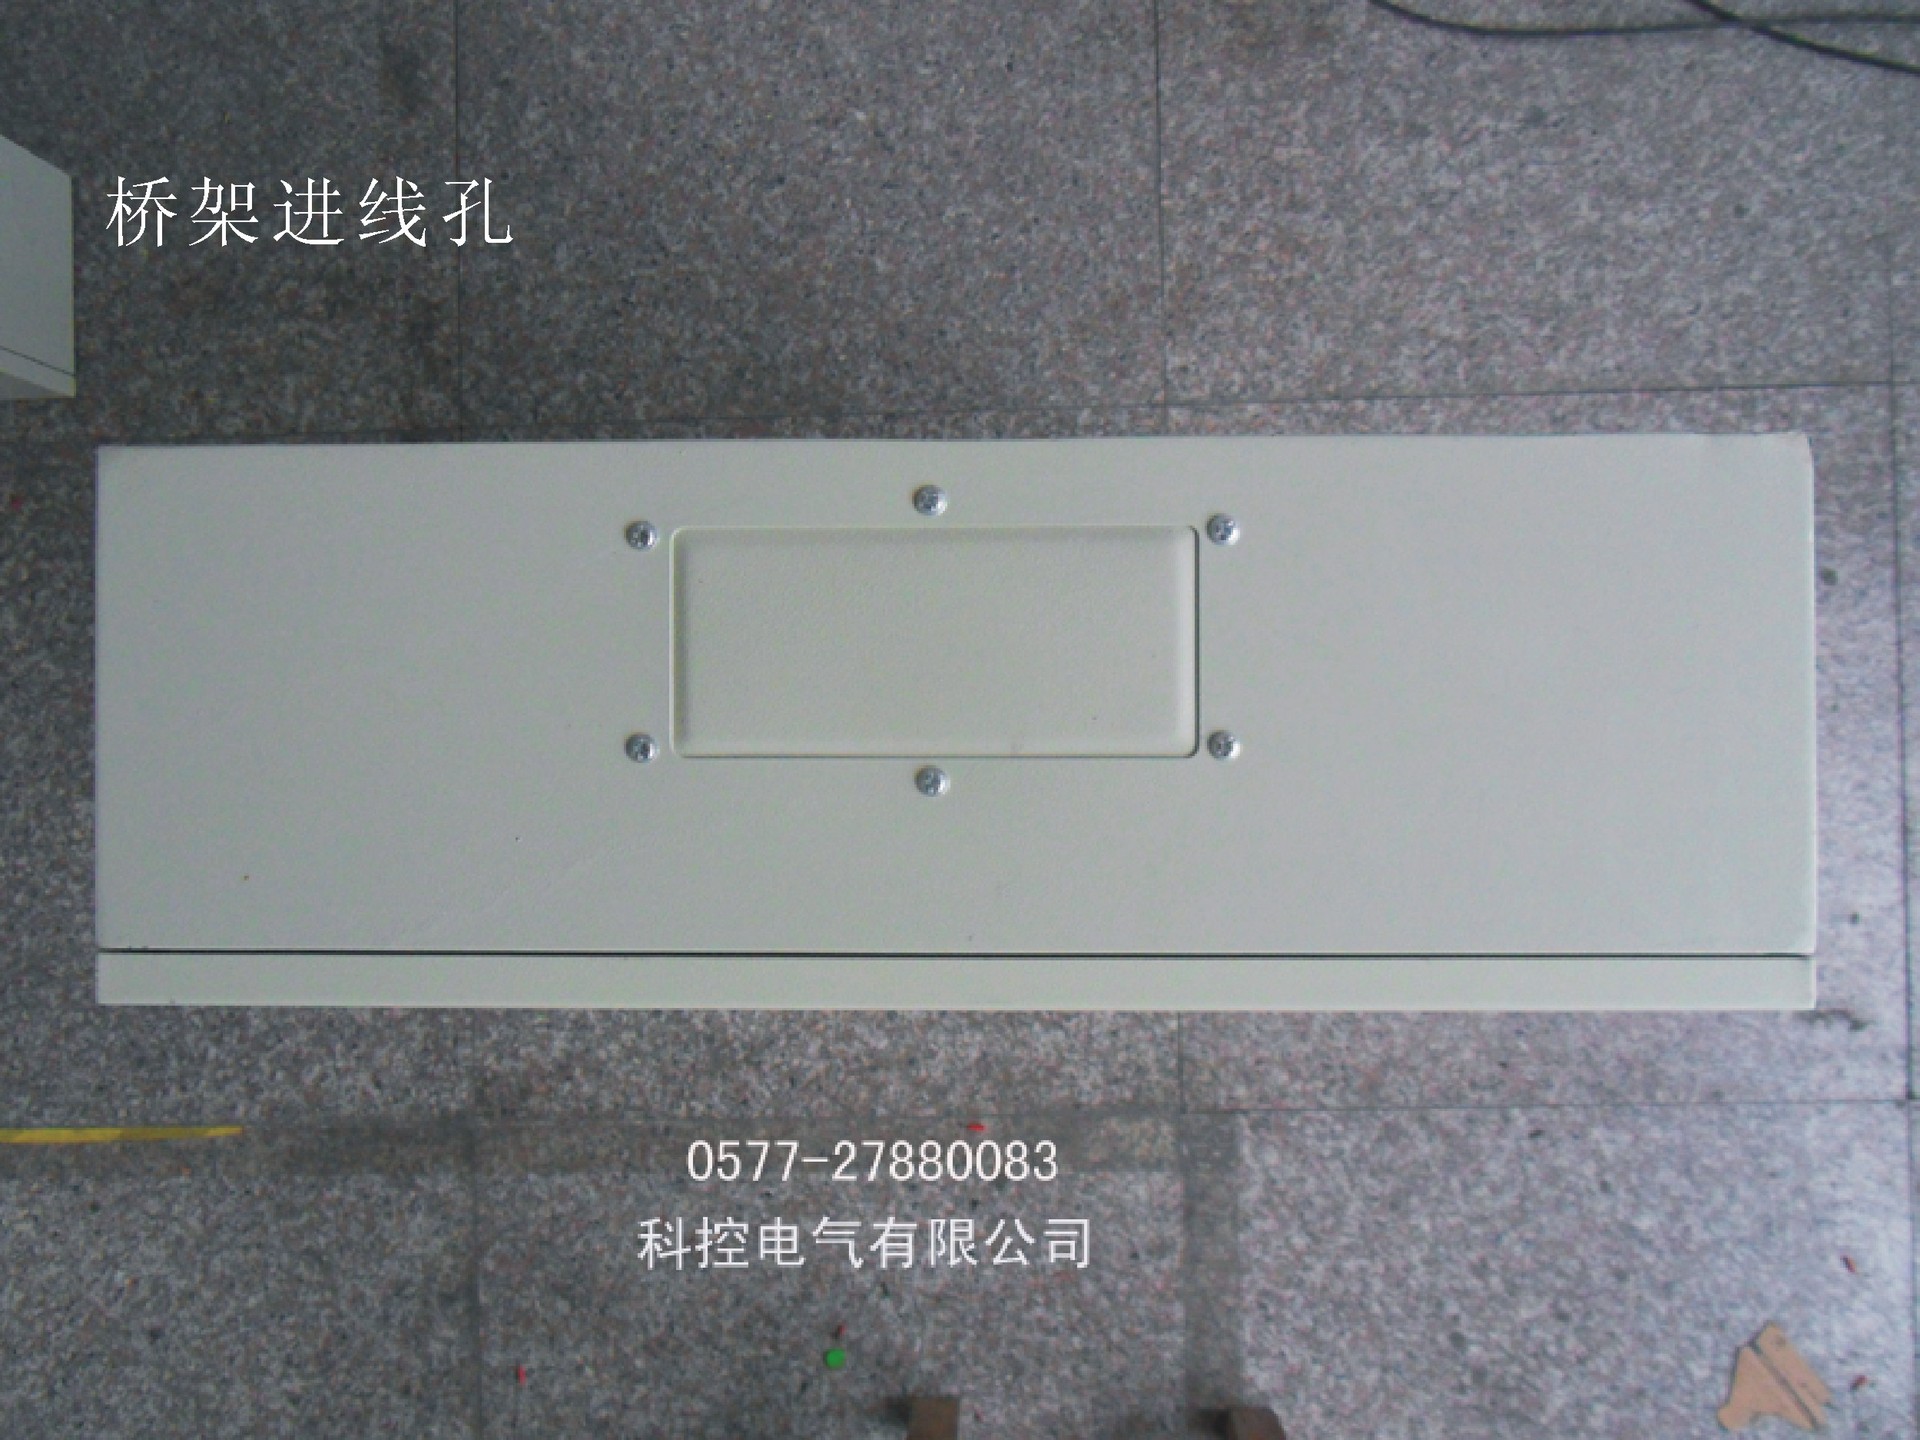 户内型 JXF基业箱 铁质配电箱 户外防雨型电控箱生产厂家 控制柜,控制,柜